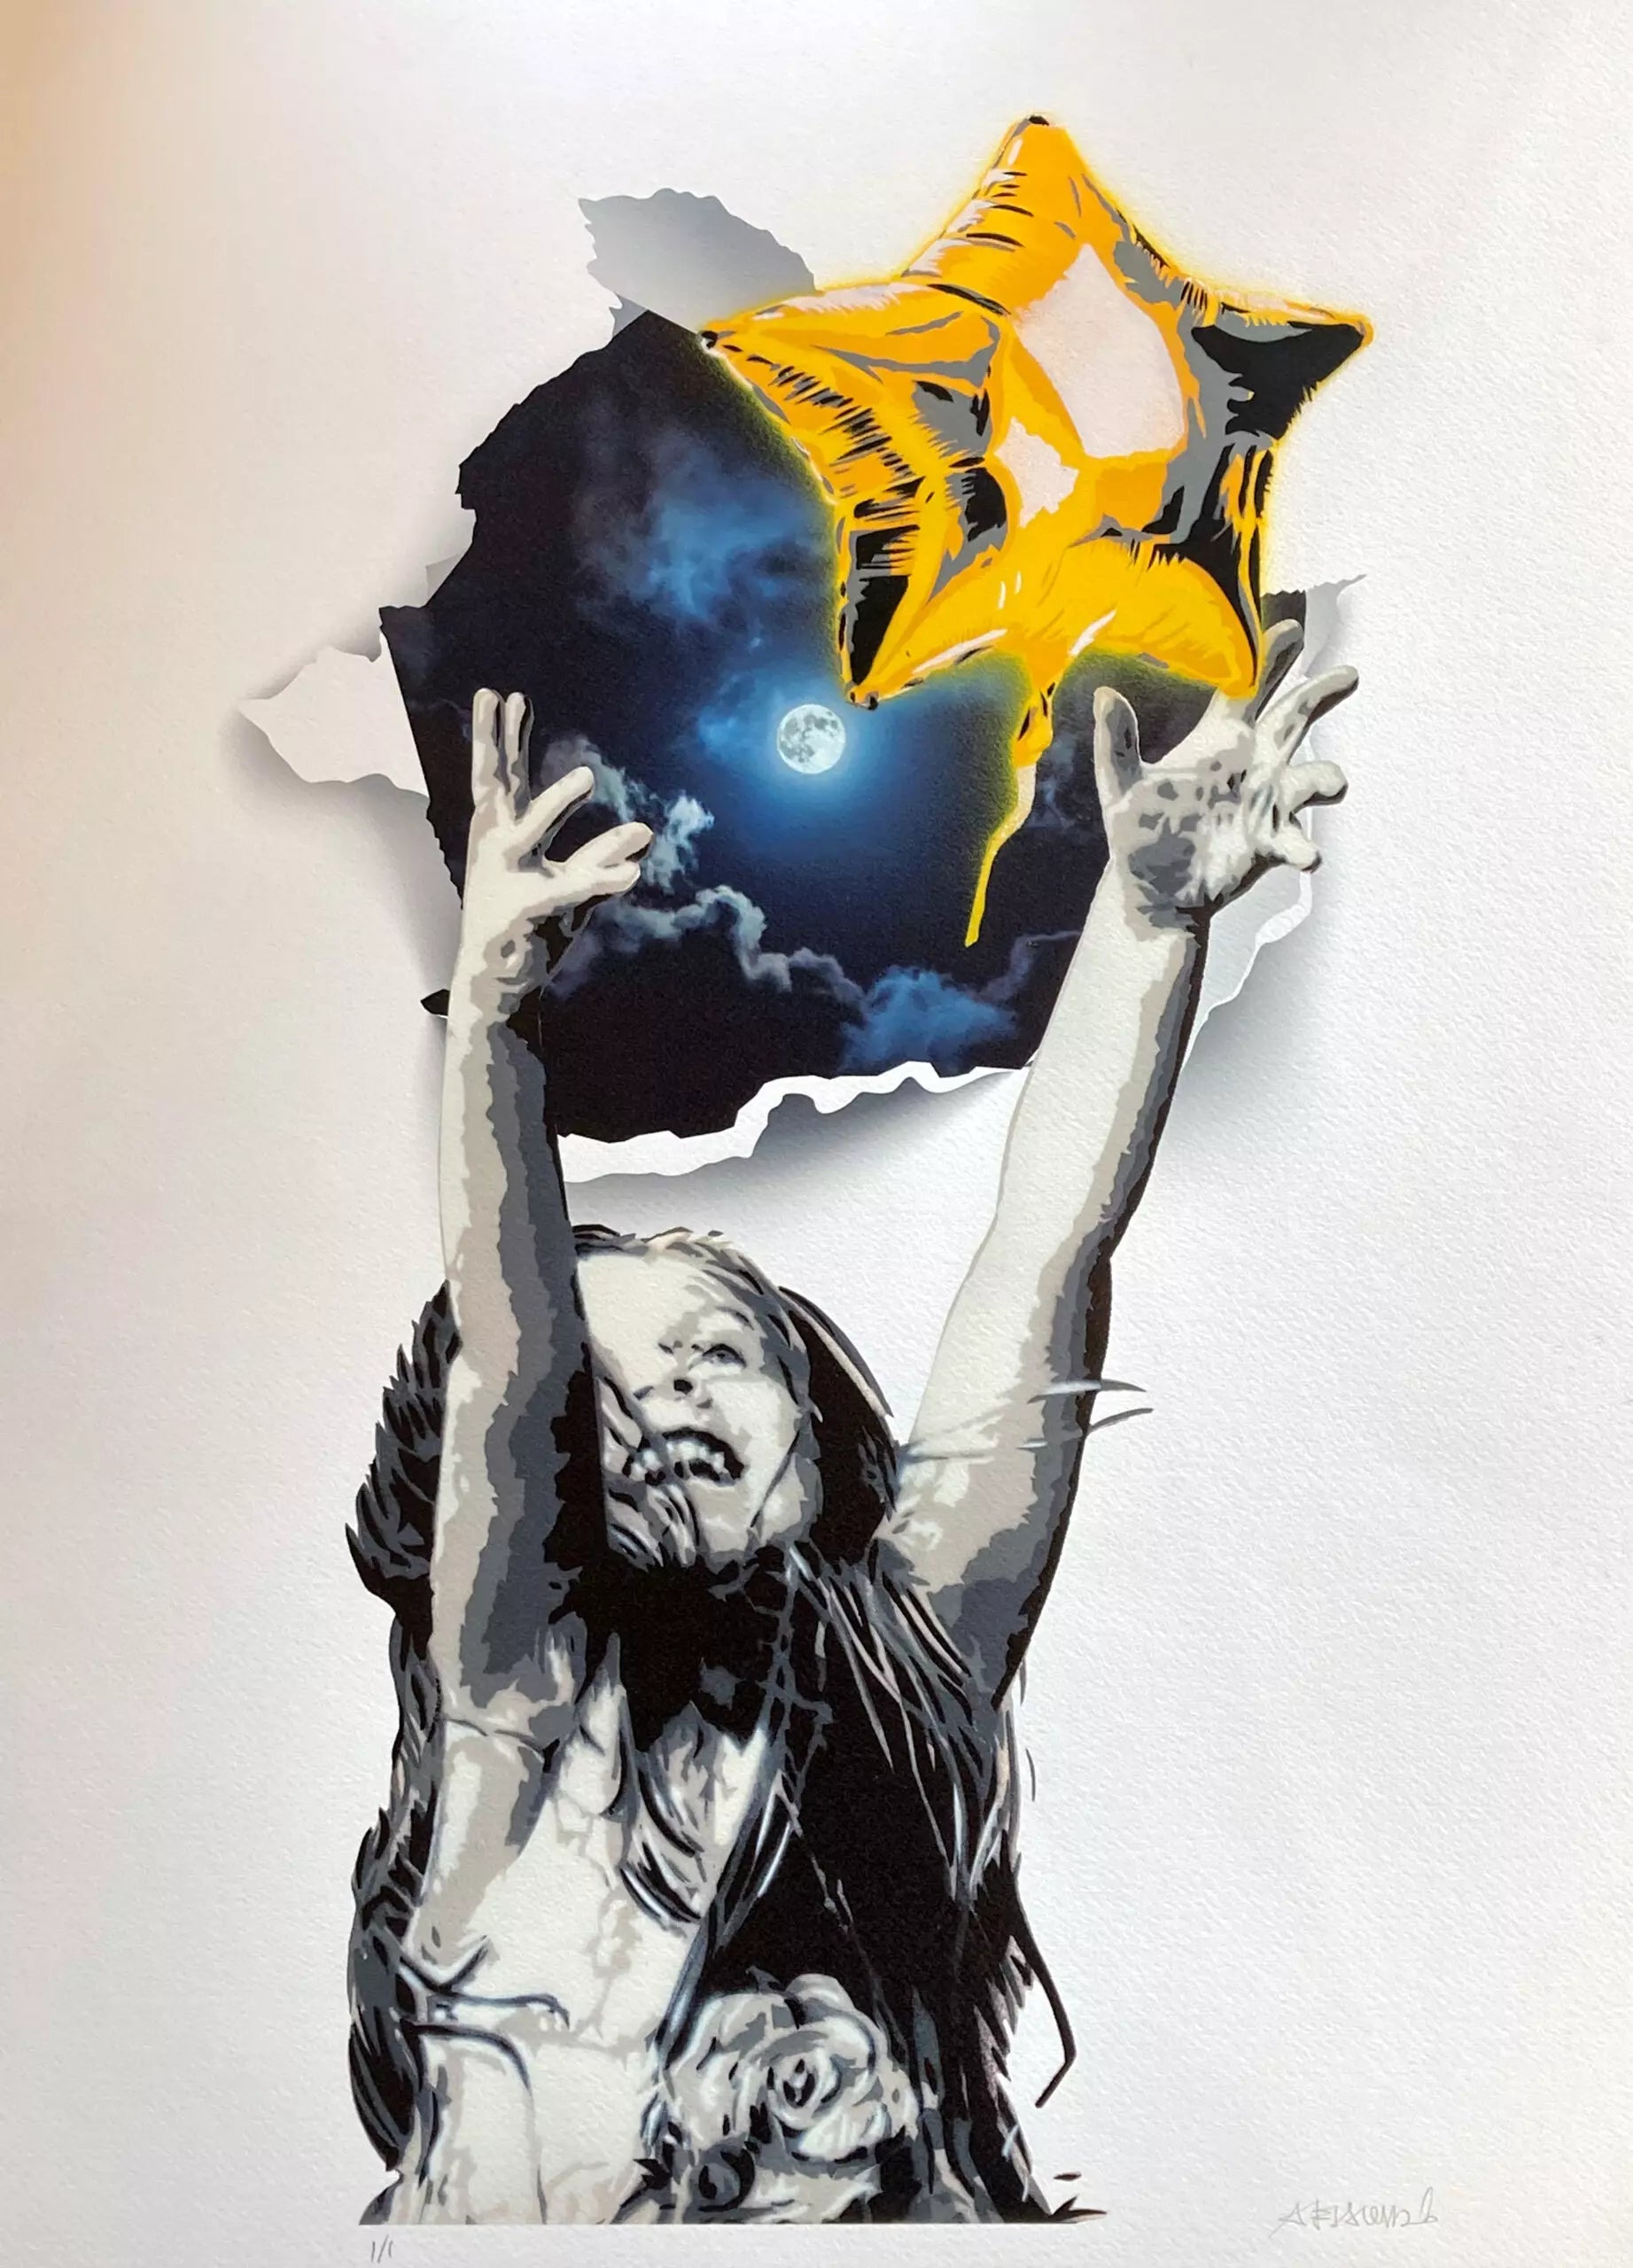 Off The Wall-Moon Edition di Alessio-B. Stampa giclée stampa su carta 320 gsm rifinita a mano rappresentante una bambina gioiosa che lancia un palloncino a forma di stella | Cd Studio d'Arte